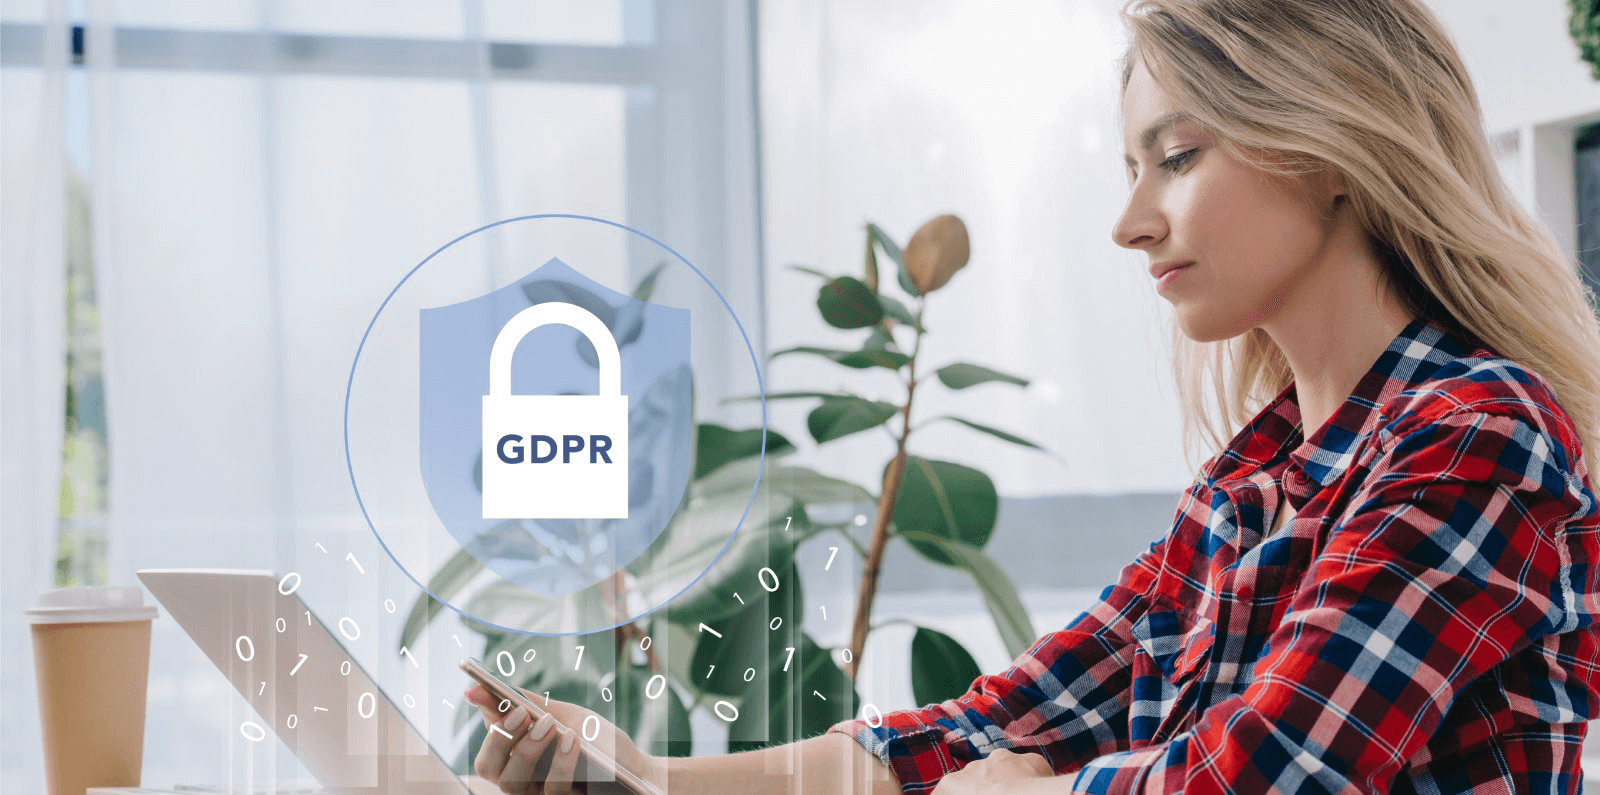 Contagem de pessoas - LGPD e GDPR: sua privacidade também conta